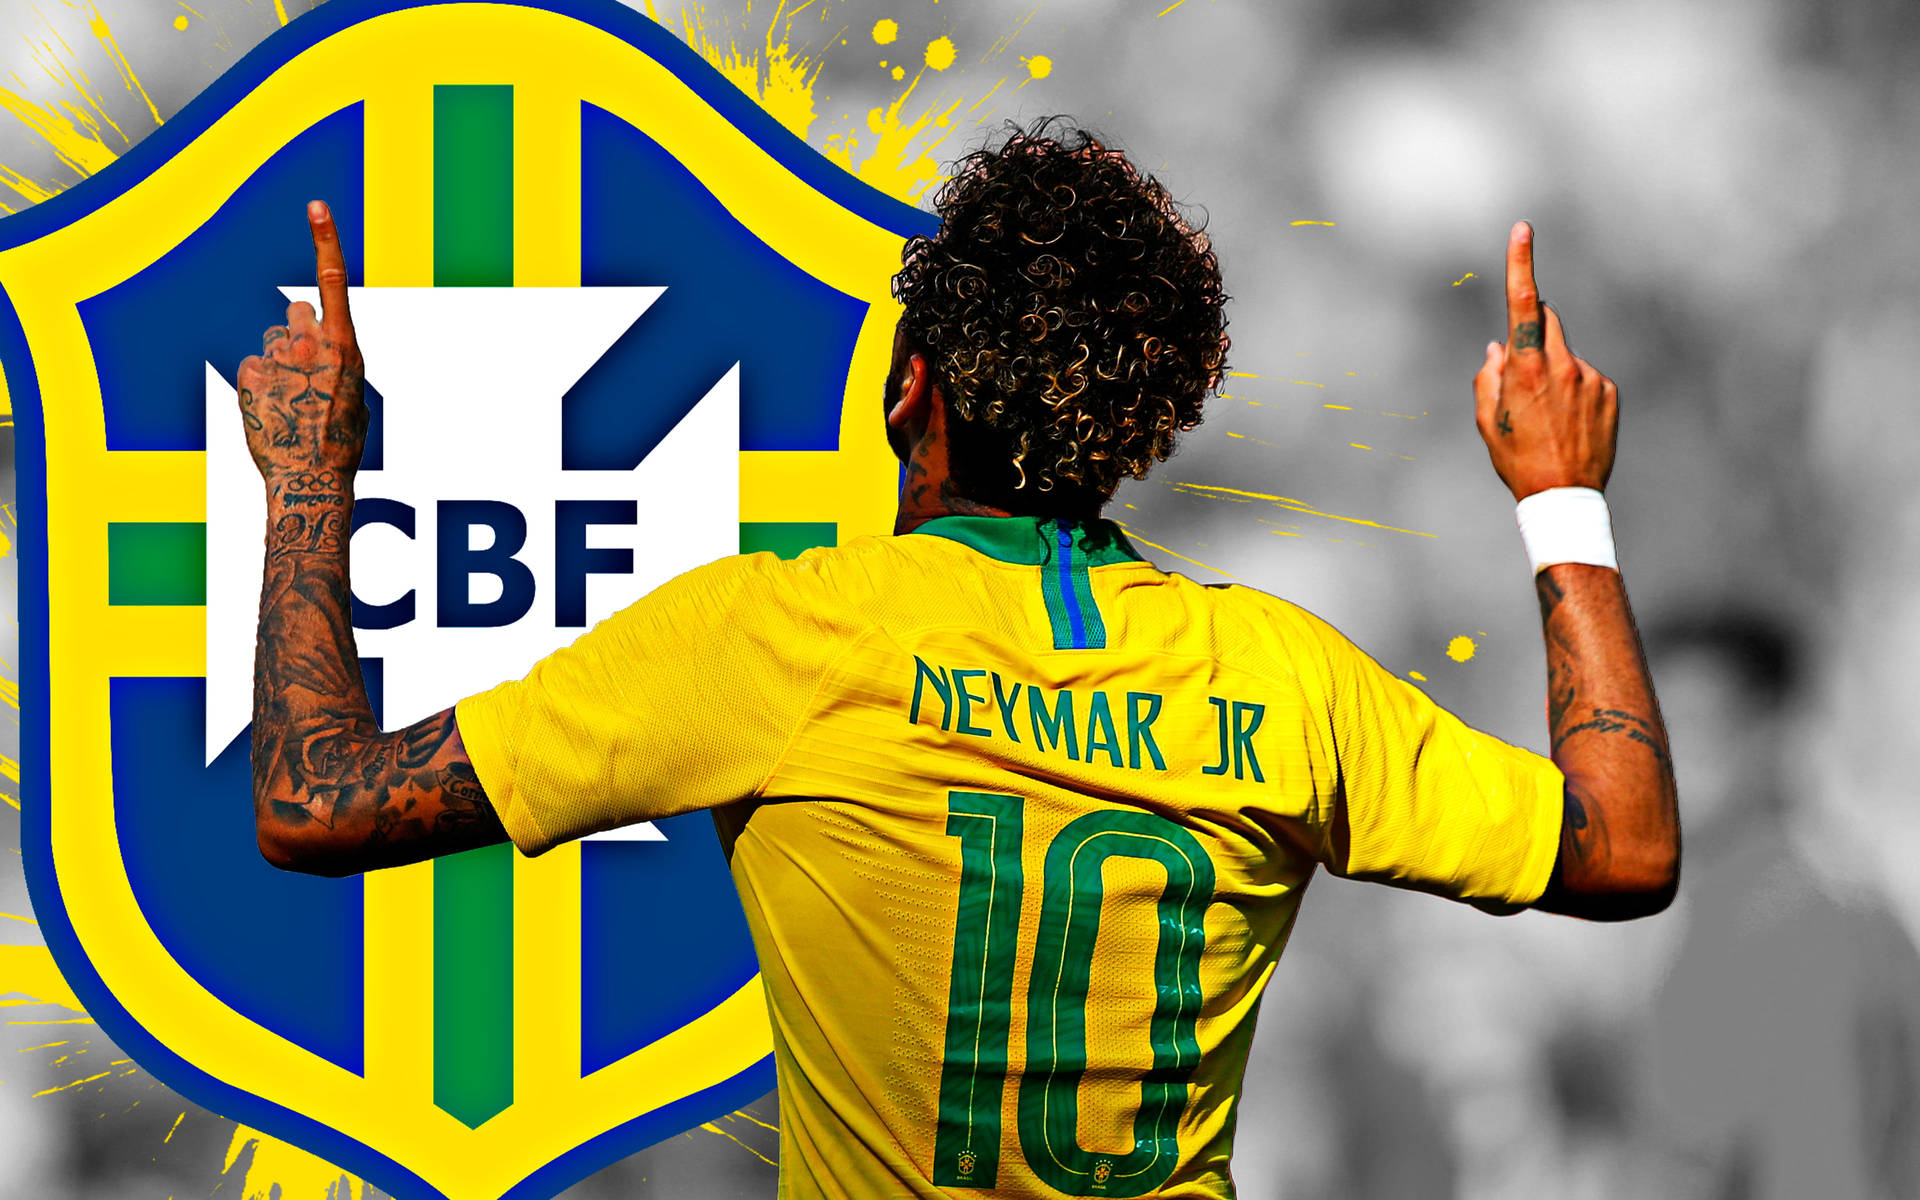 Neymar 4k With Big Cbf Logo